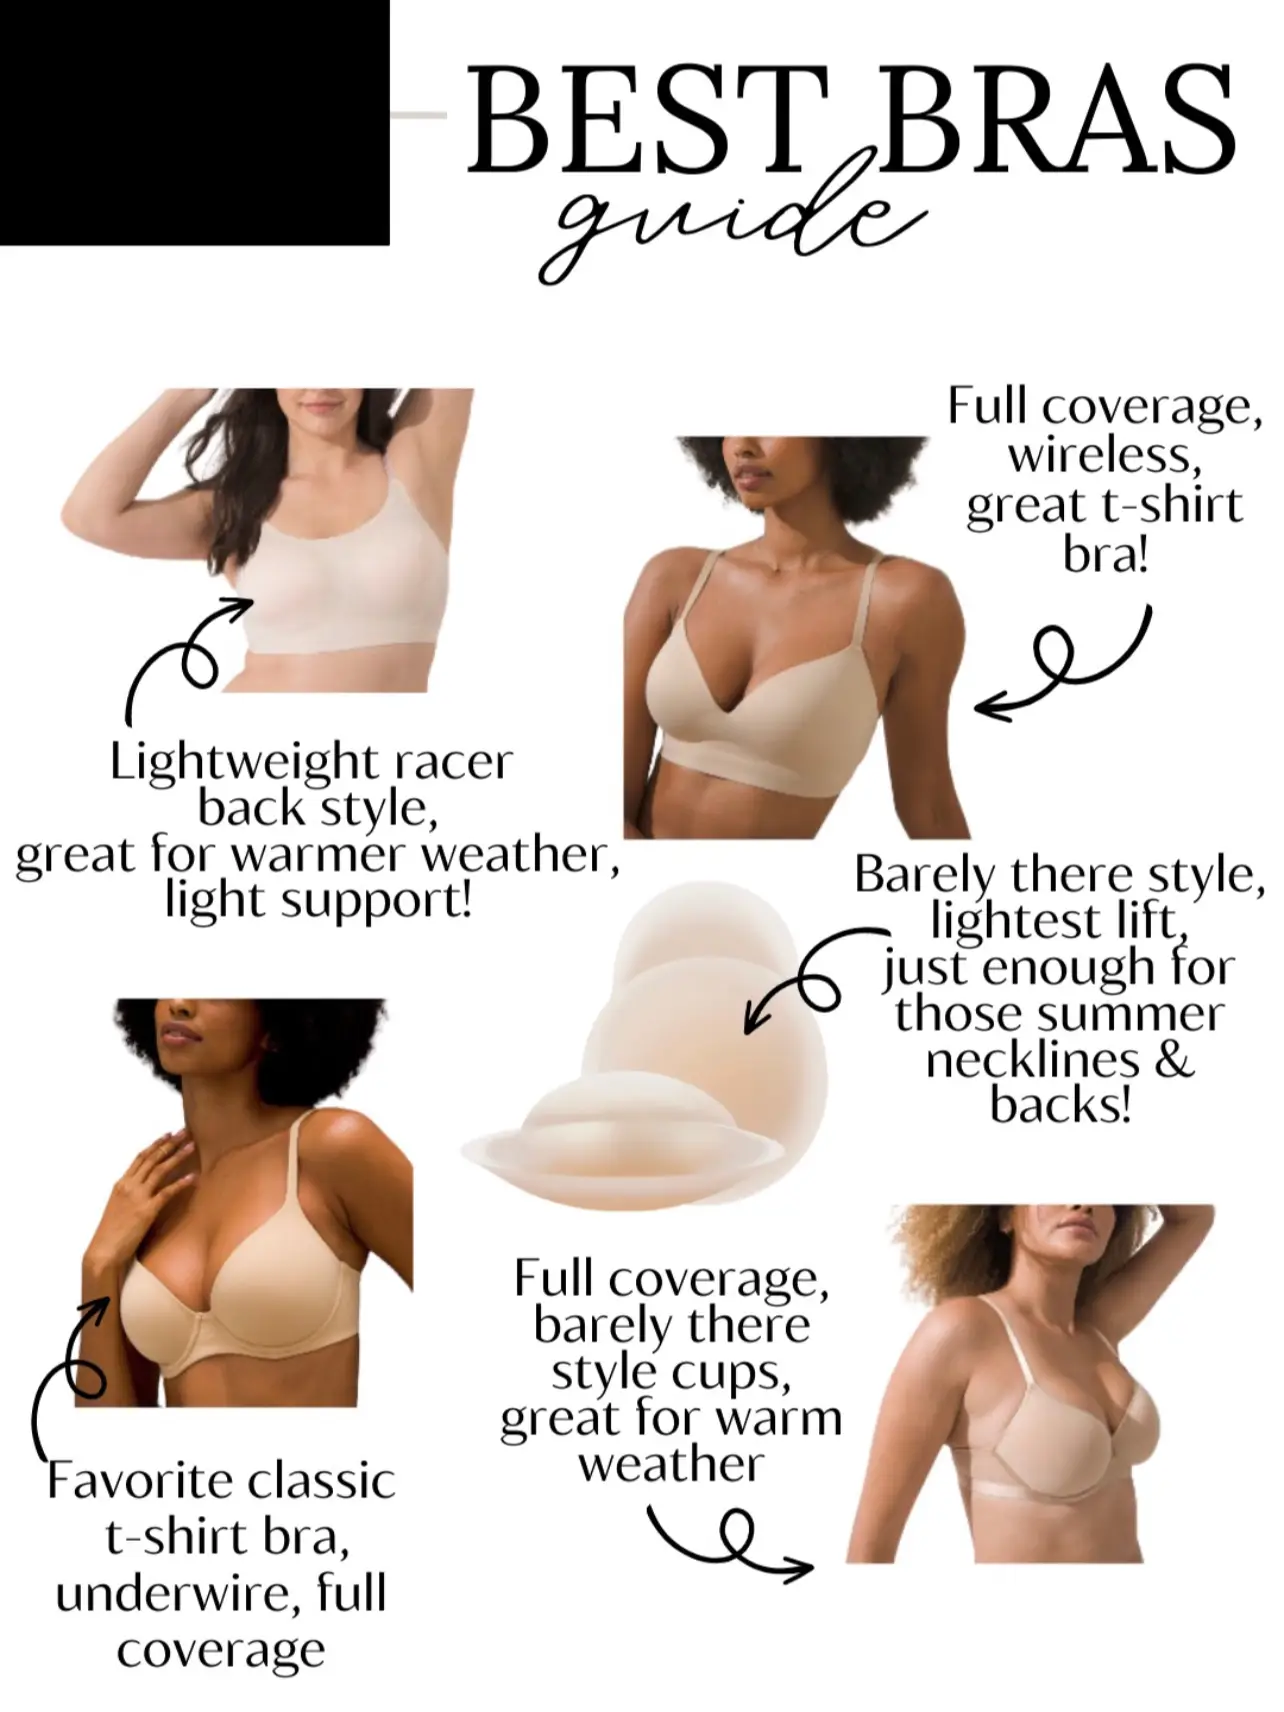 I'm a 32H & did a big boob bra haul - my favorite designs include